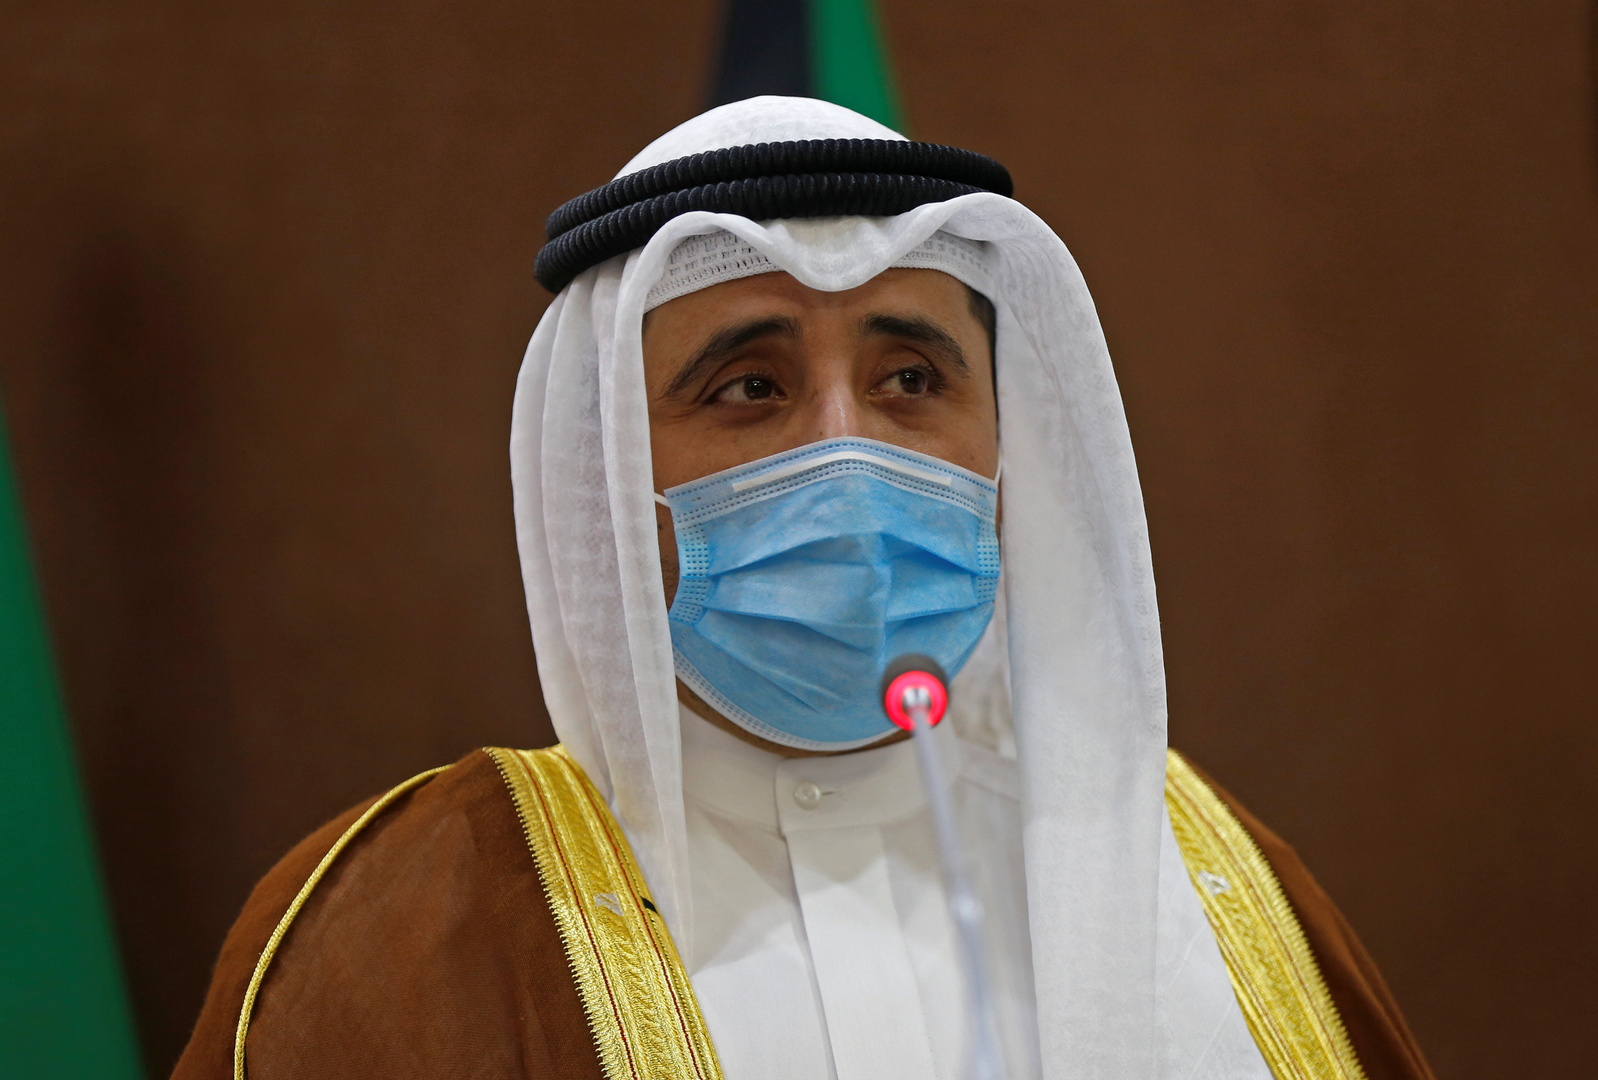 وزير الخارجية الكويتي يدخل في حجر صحي بعد لقائه رئيس وزراء باكستان المصاب بكورونا